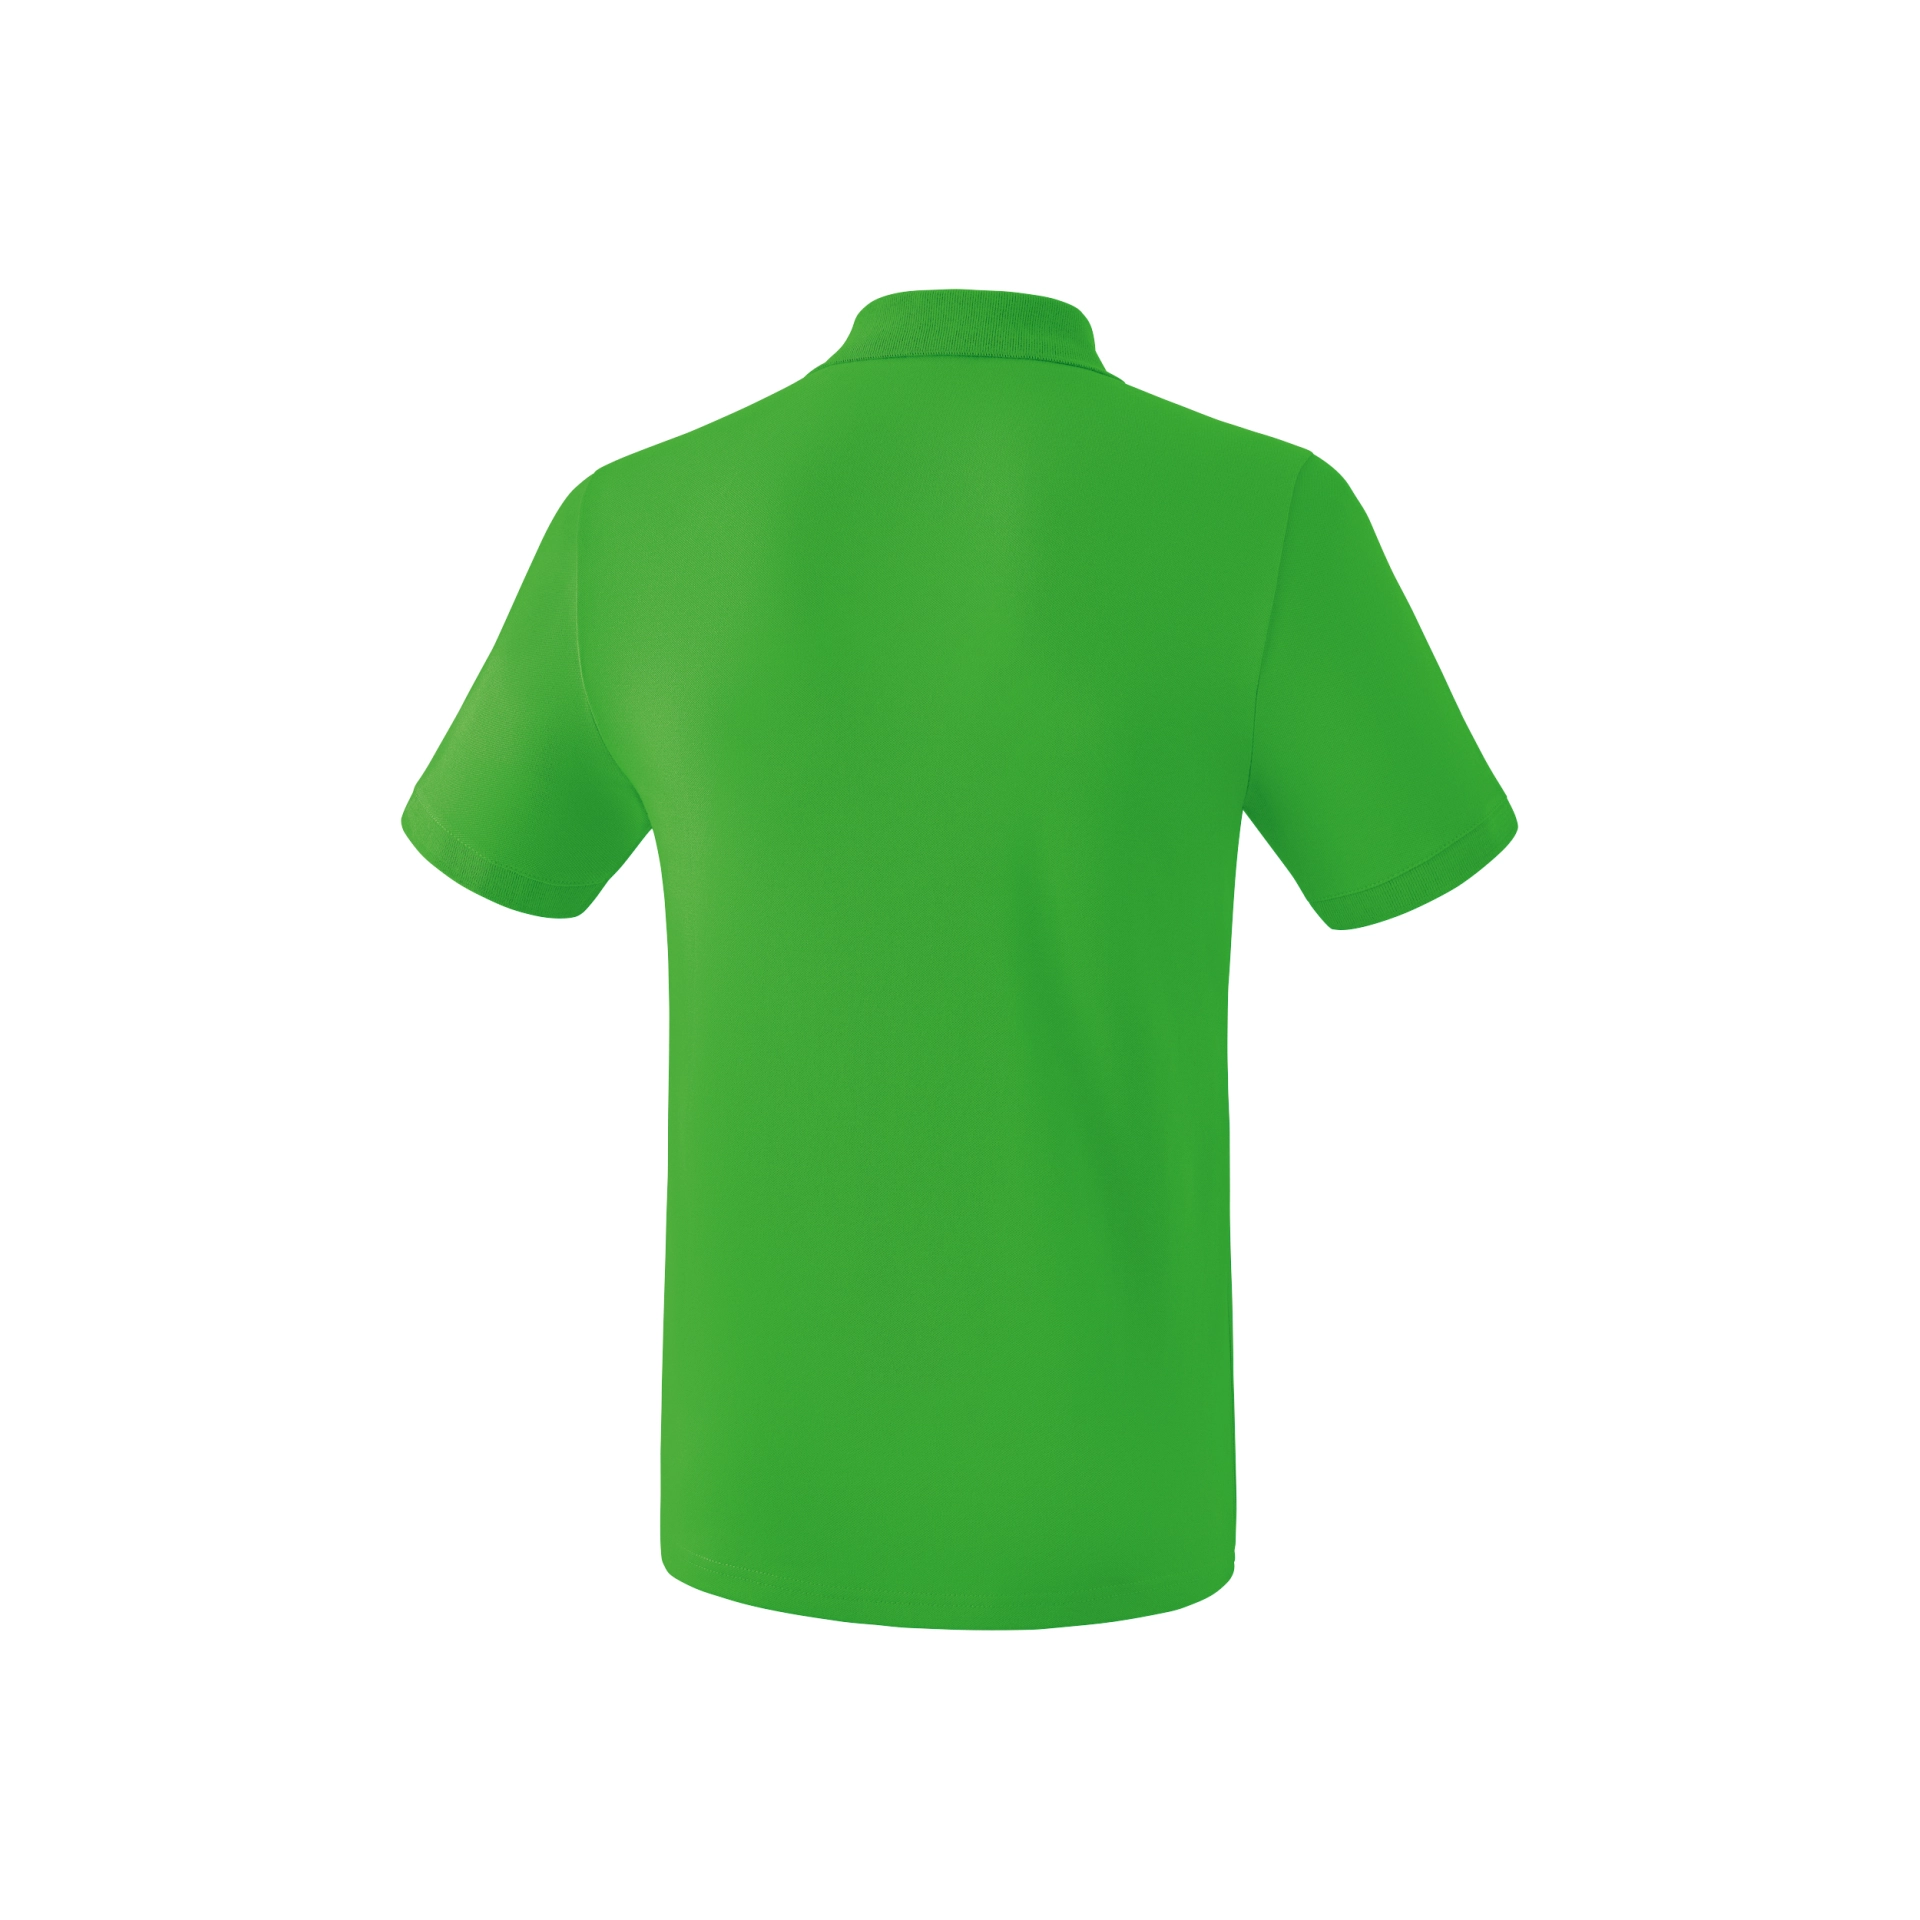 ERIMA Kinder_Teamsport_Poloshirt 211335K 636 green